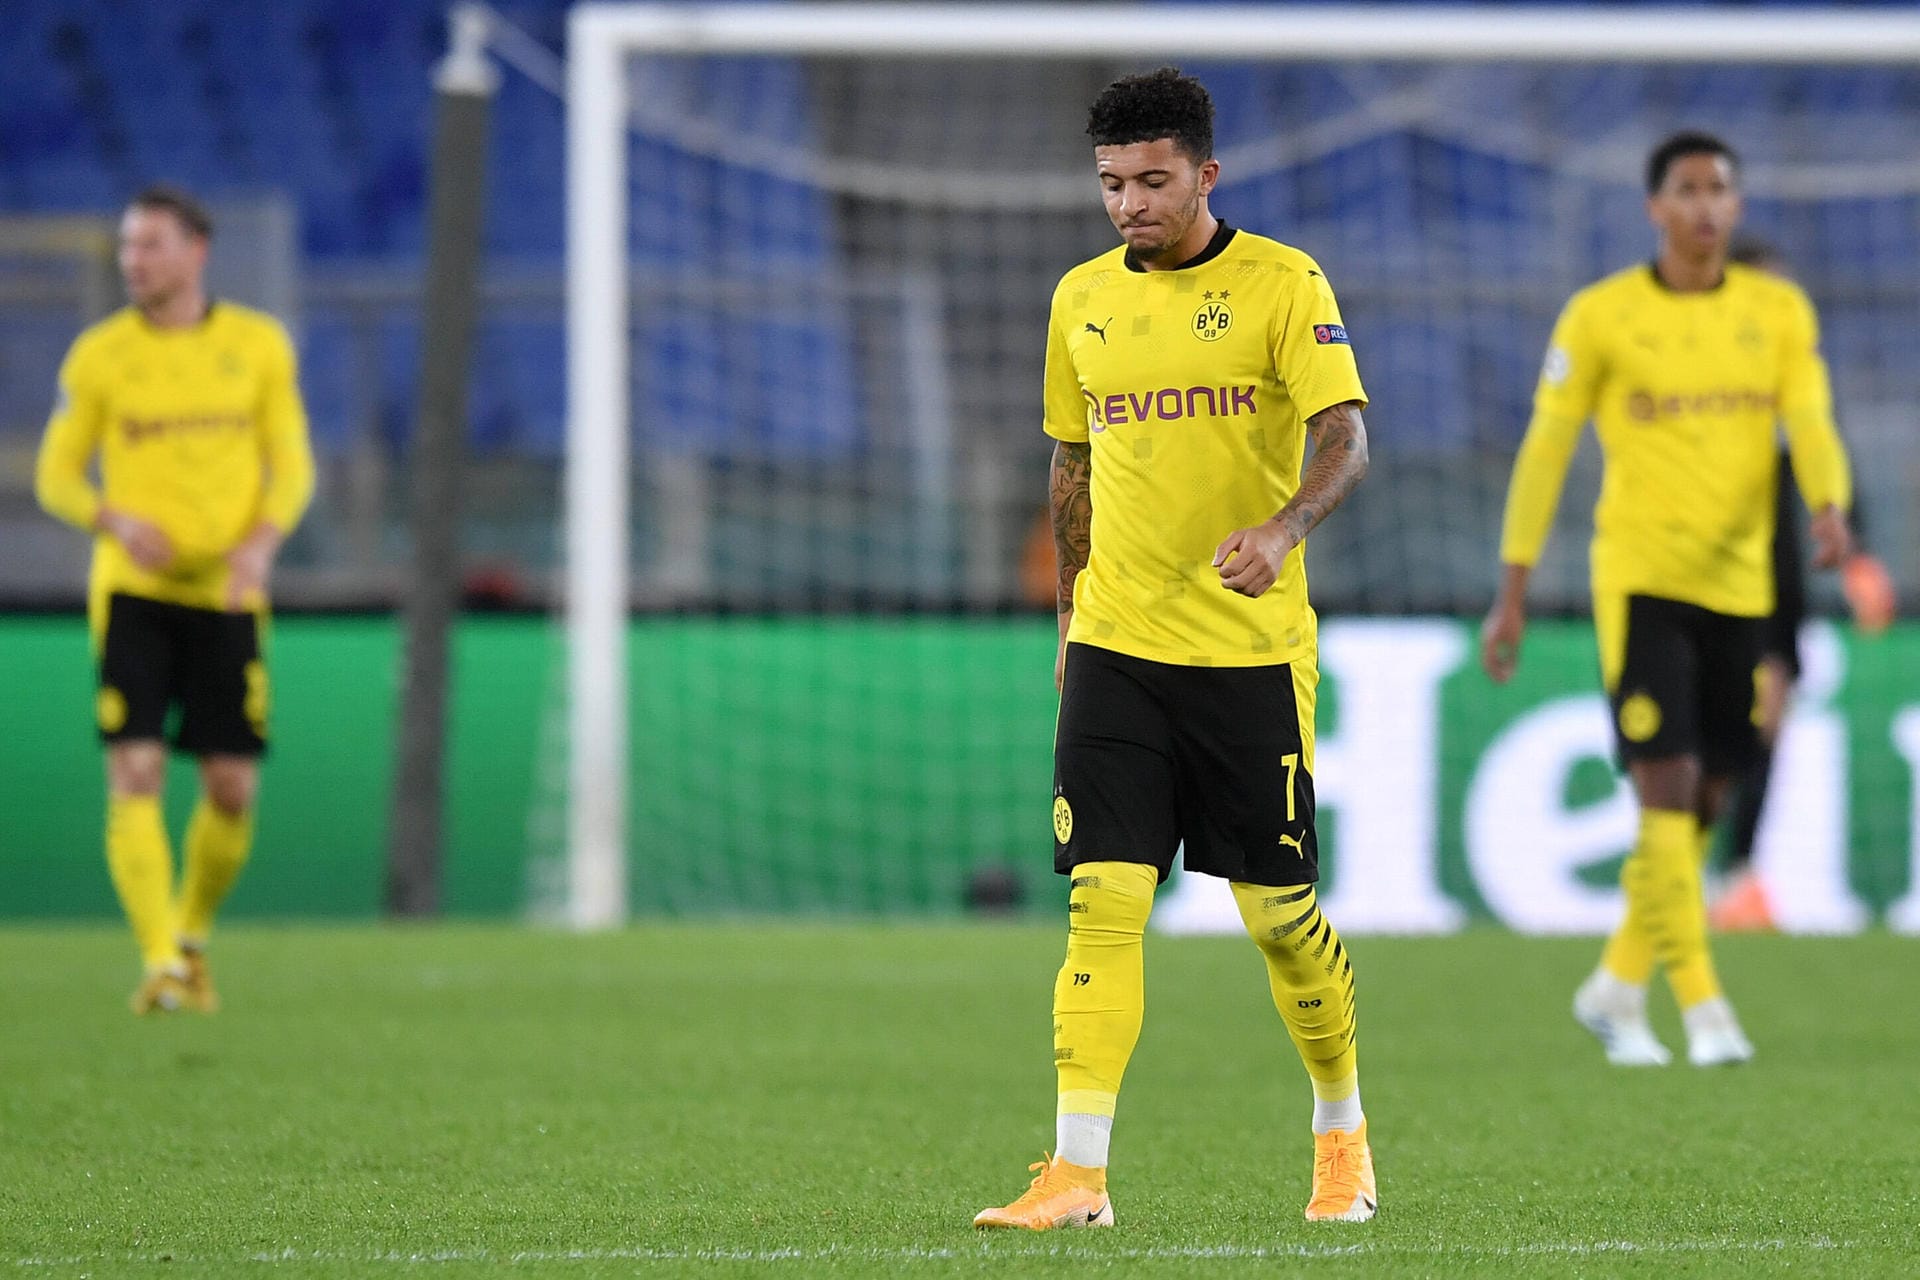 Borussia Dortmund hat den Champions-League-Auftakt mit einem 1:3 bei Lazio verpatzt. Die Römer waren im ersten Durchgang das klar bessere Team und bestraften die schläfrige Art des BVB eiskalt. Die wenigsten Dortmunder konnten überhaupt positive Glanzpunkte setzen. Die Einzelkritik.